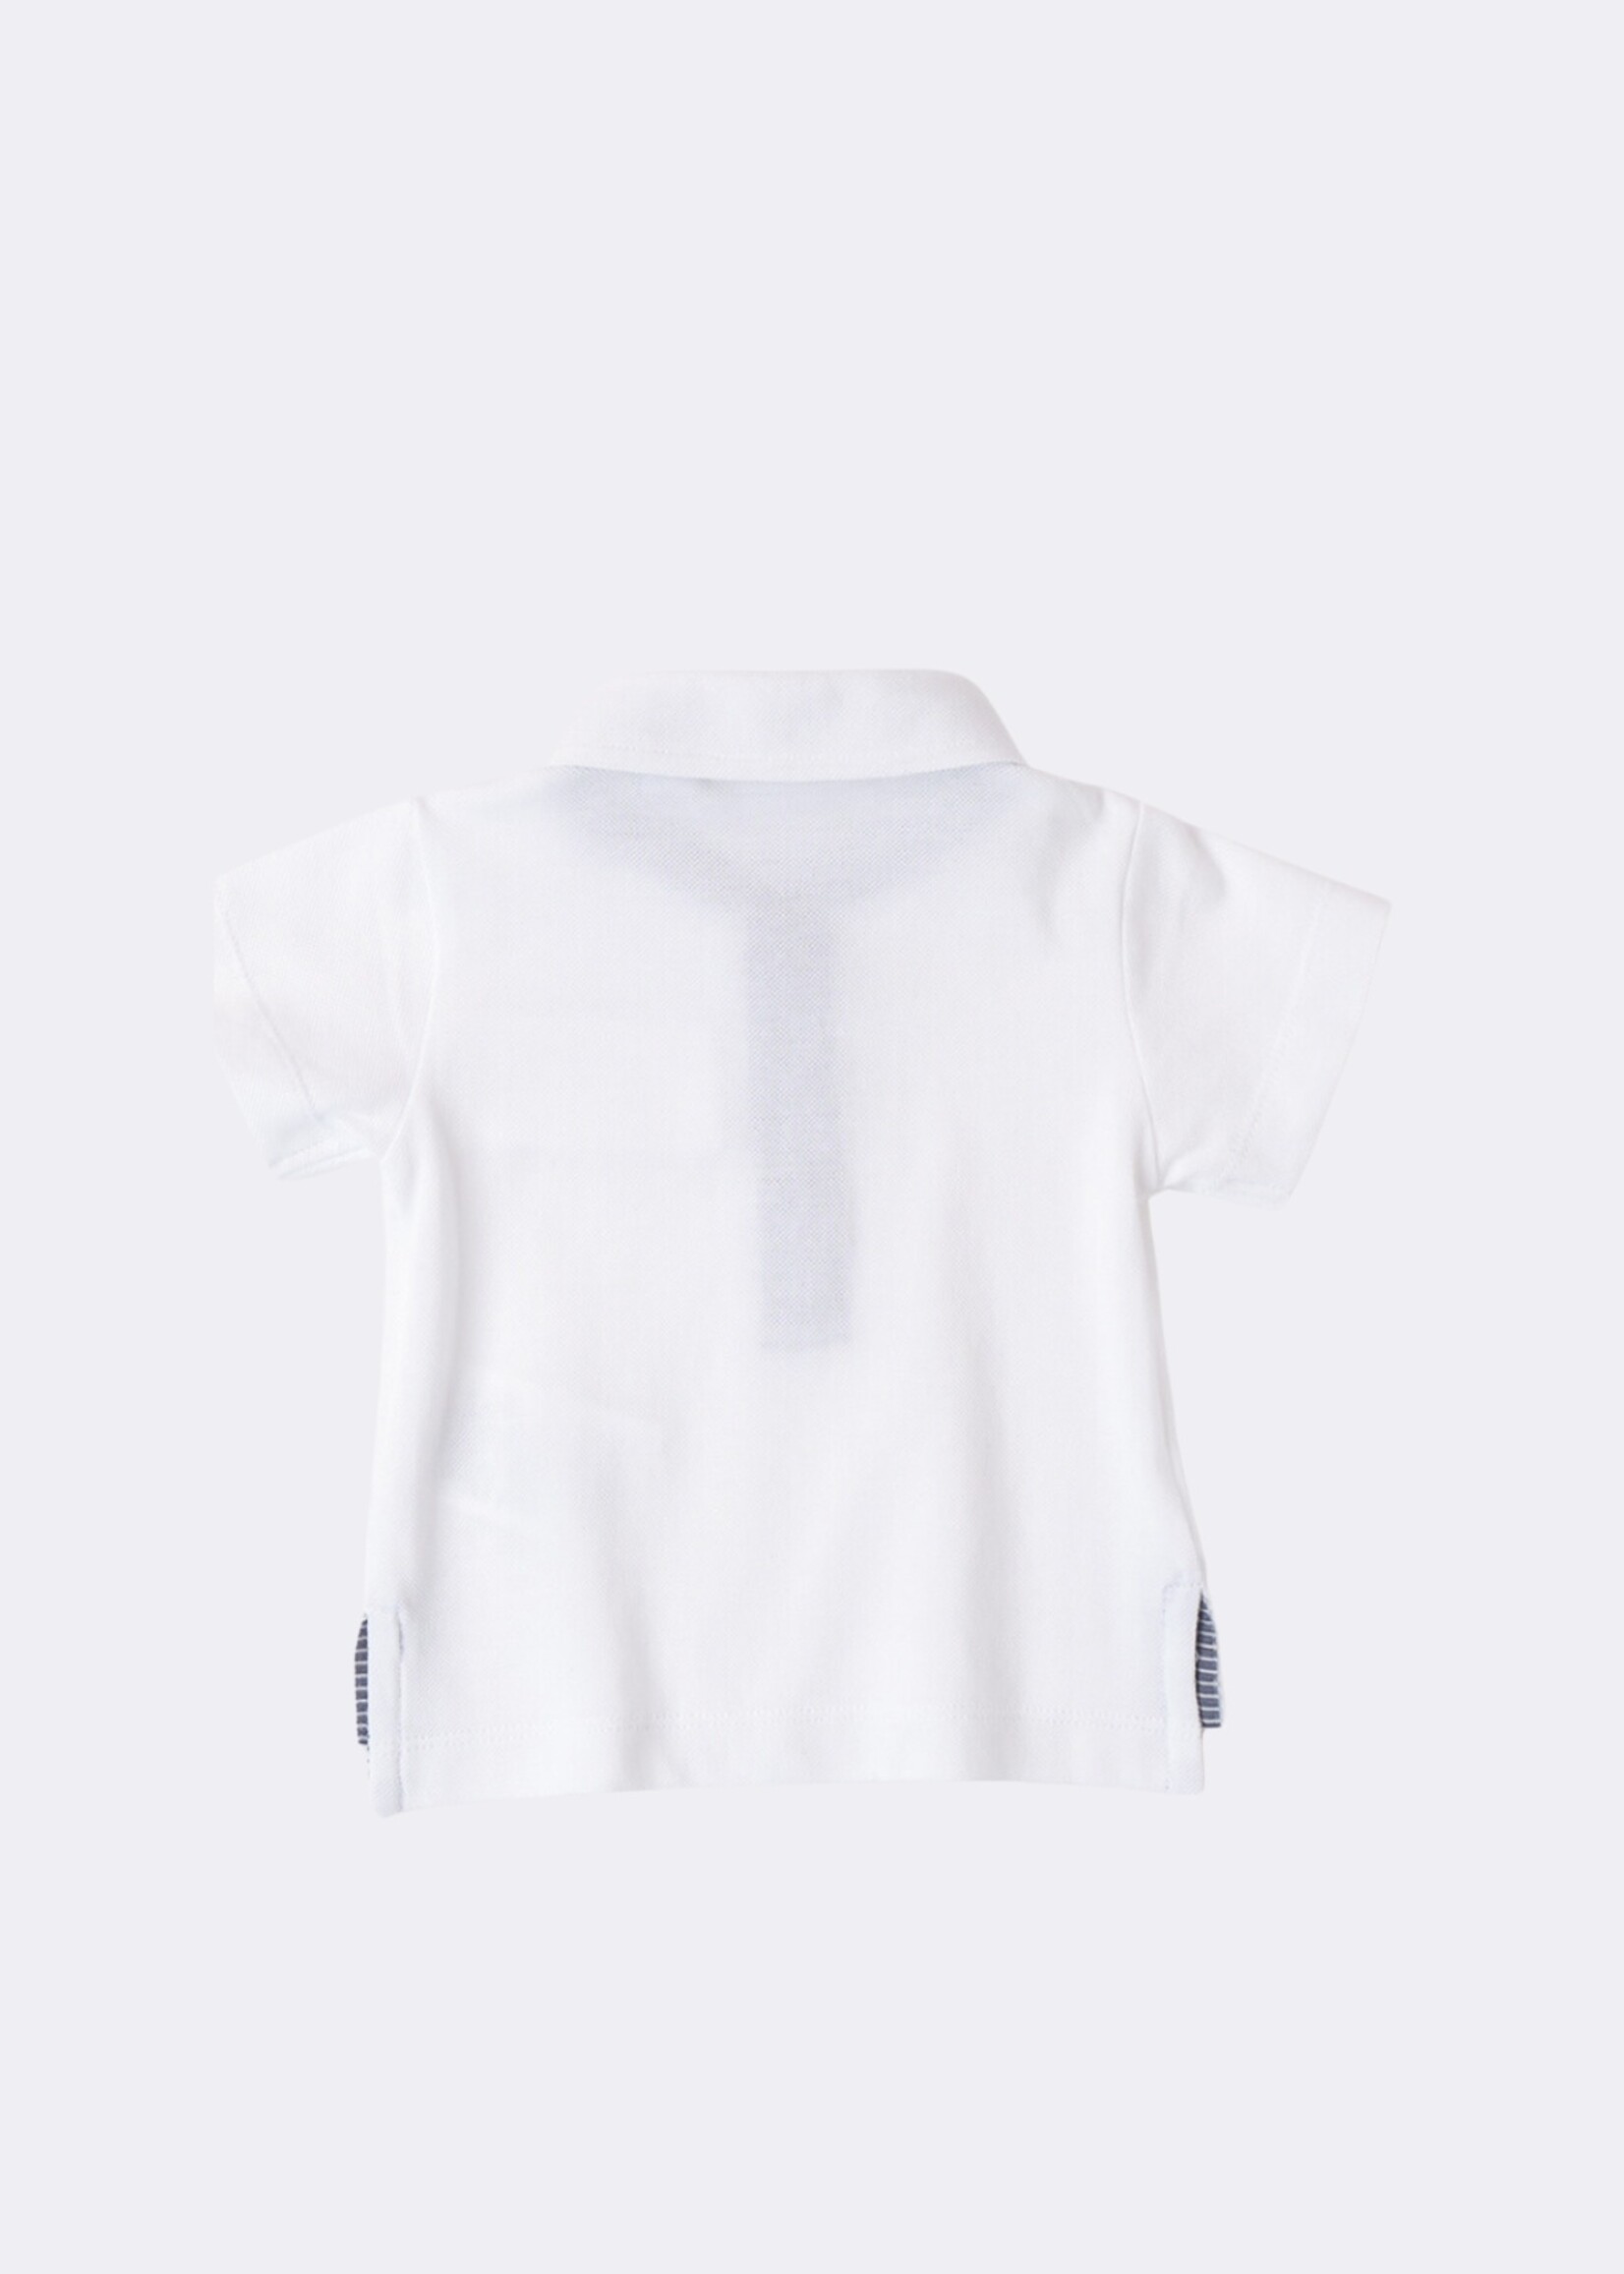 Minibanda Polo Blanc 100% Coton